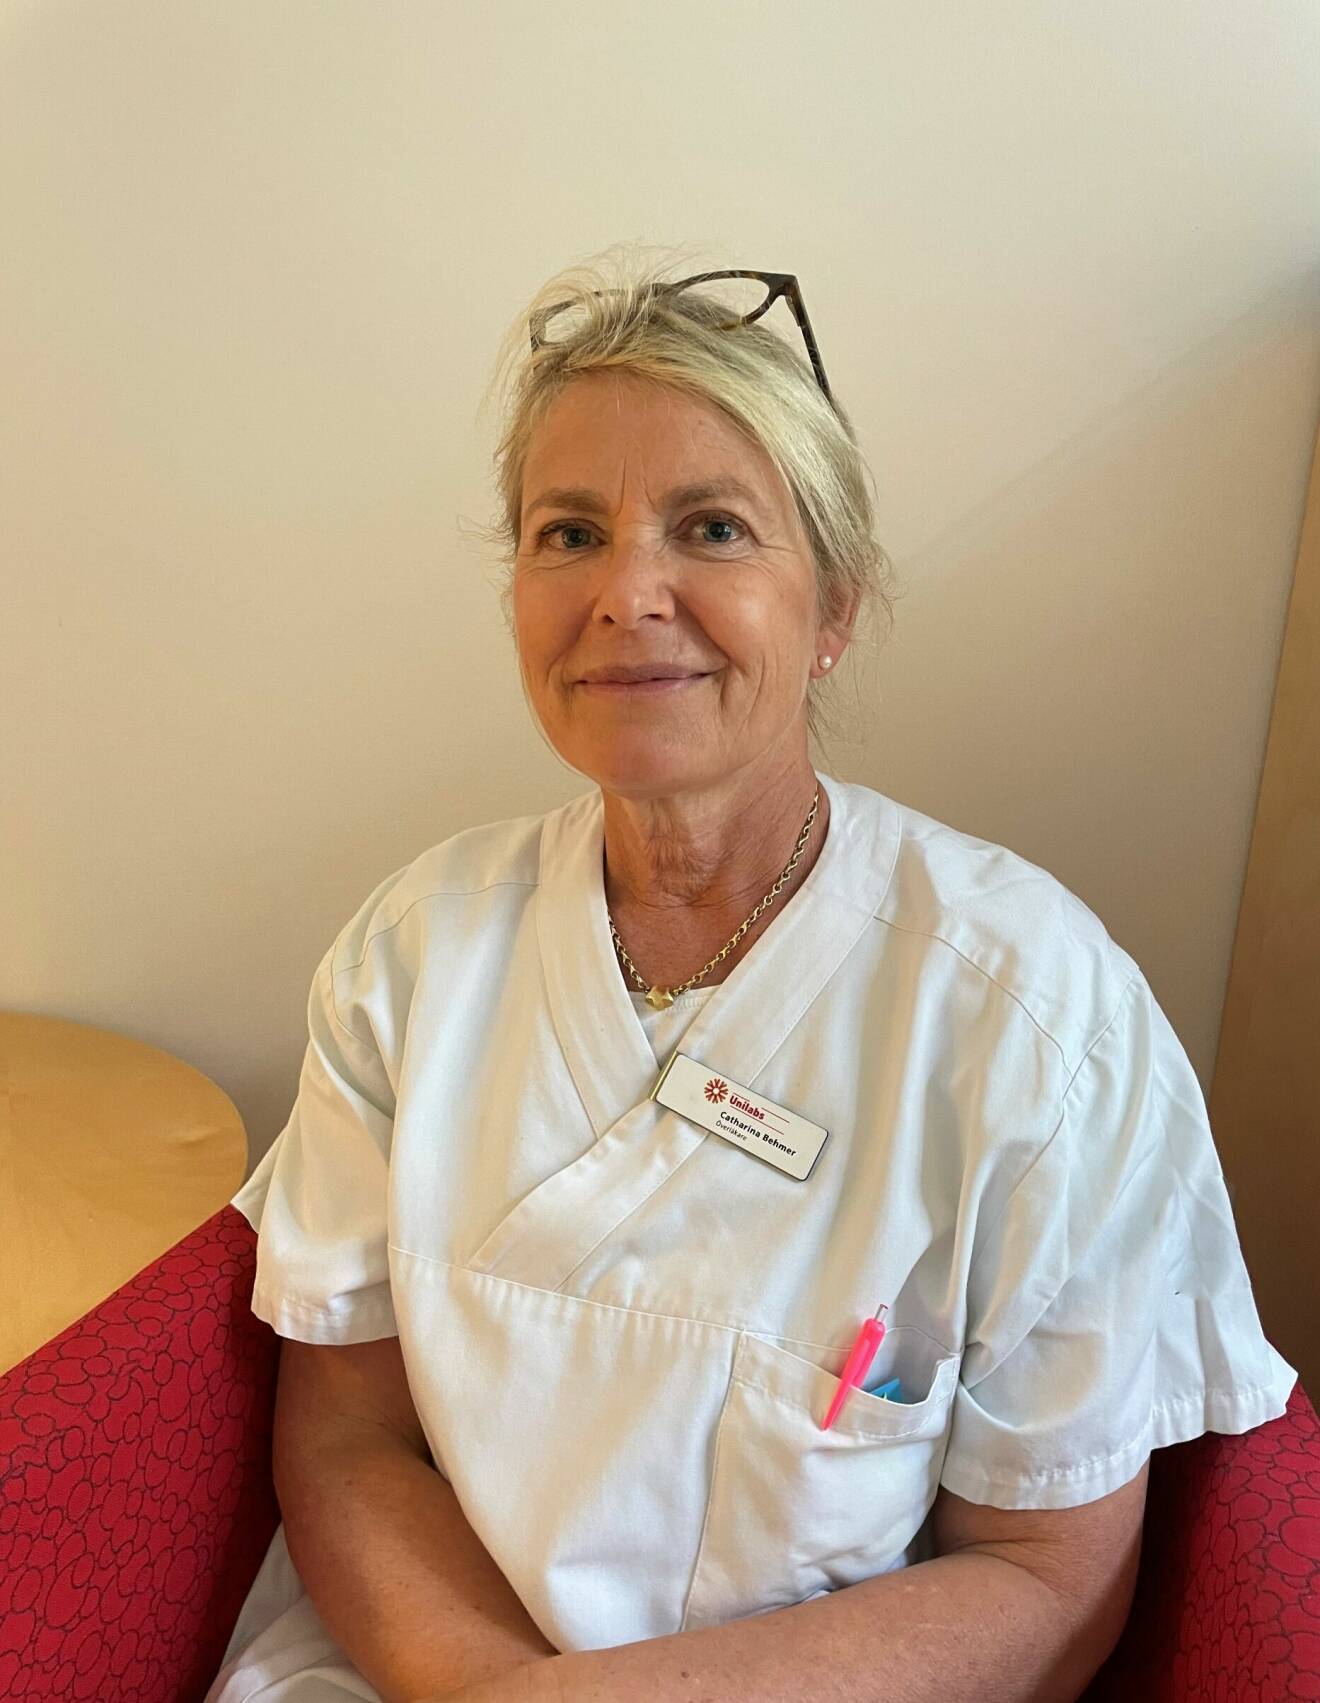 Catharina Behmer är överläkare och medicinsk chef för Unilabs mammografi i Sverige.